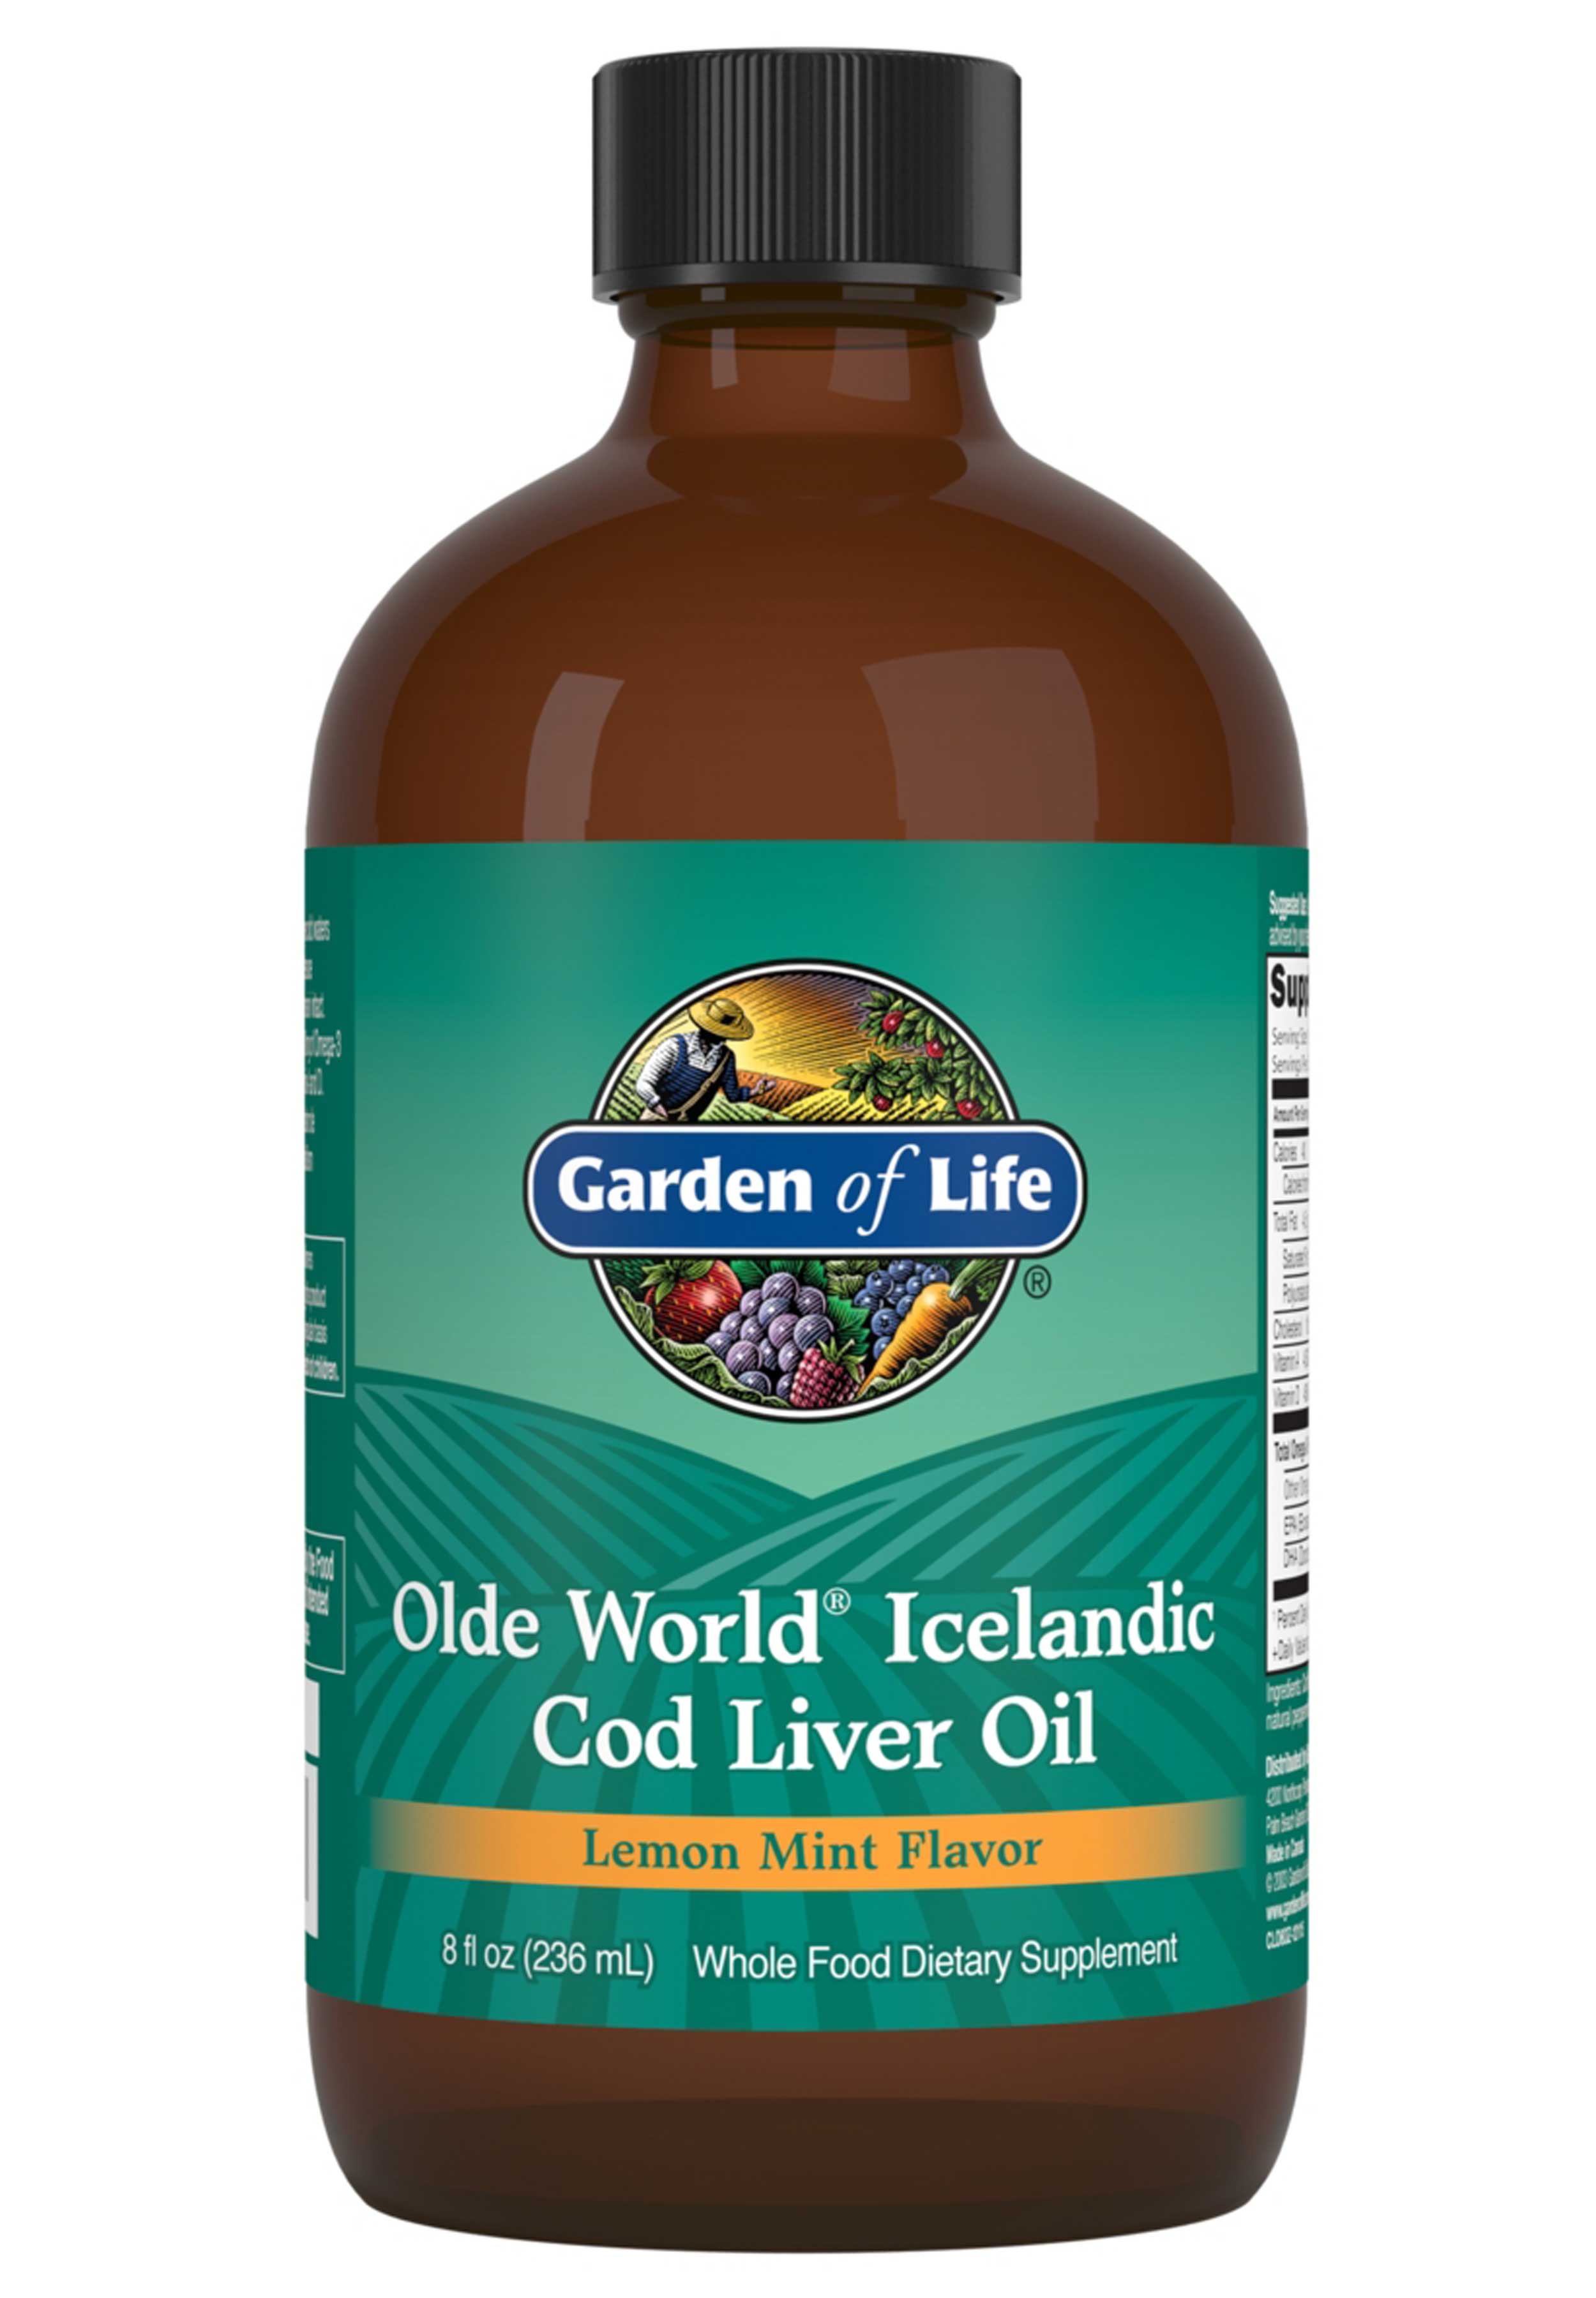 Garden of Life Olde World Icelandic Cod Liver Oil Lemon Mint